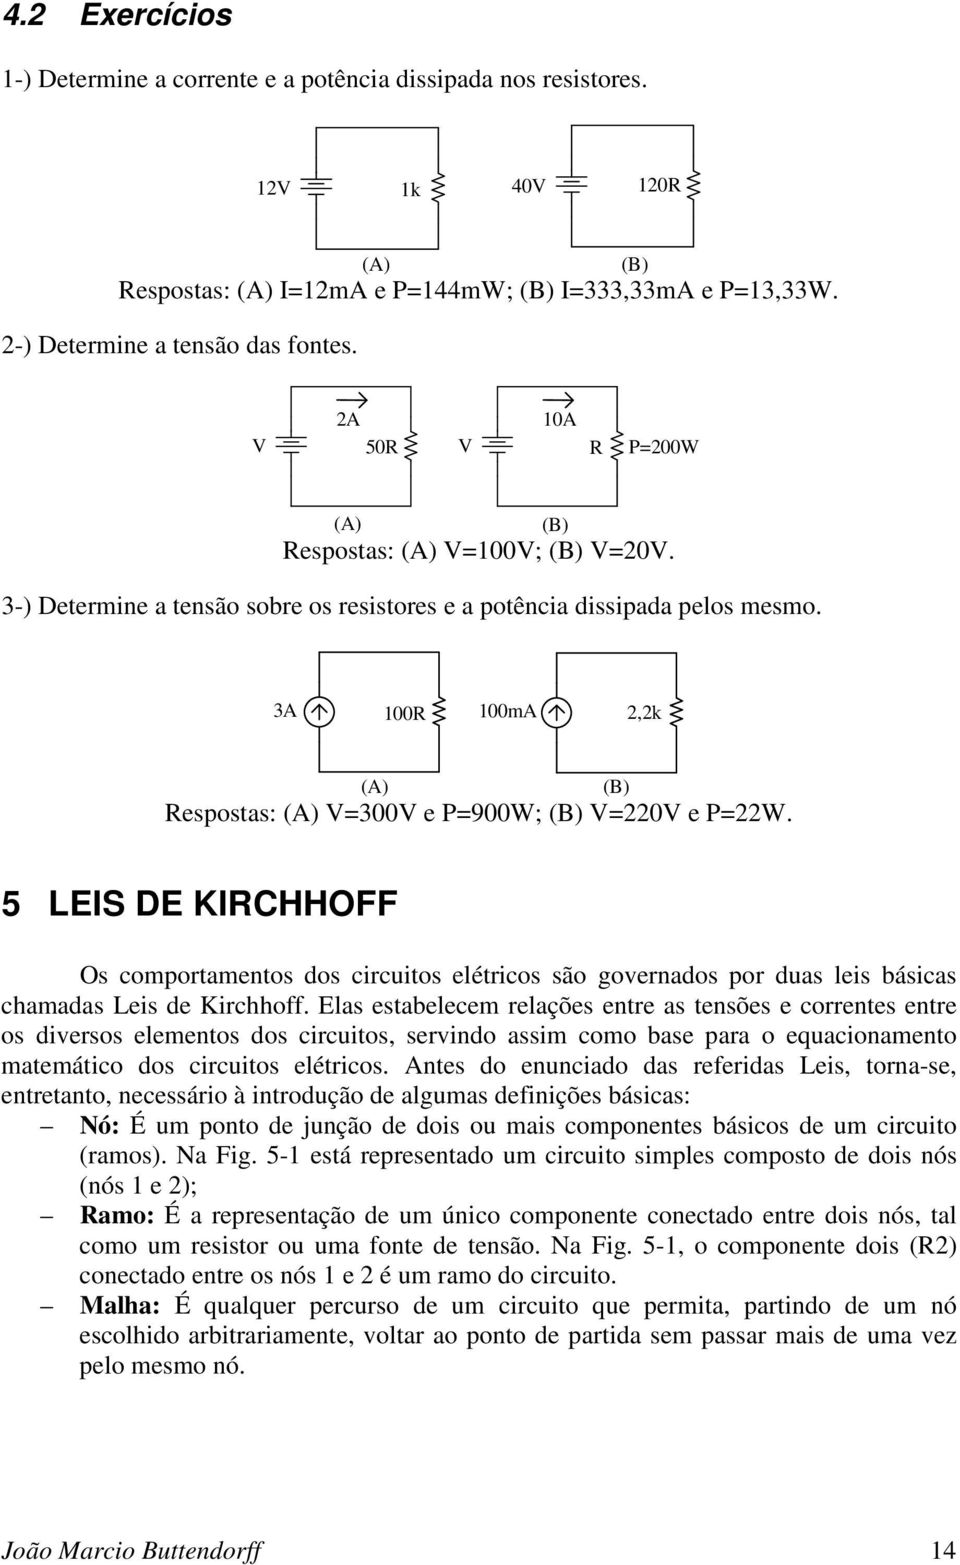 3A 100R 100mA 2,2k (A) (B) Respostas: (A) =300 e P=900W; (B) =220 e P=22W. 5 LES DE KRCHHOFF Os comportamentos dos circuitos elétricos são governados por duas leis básicas chamadas Leis de Kirchhoff.